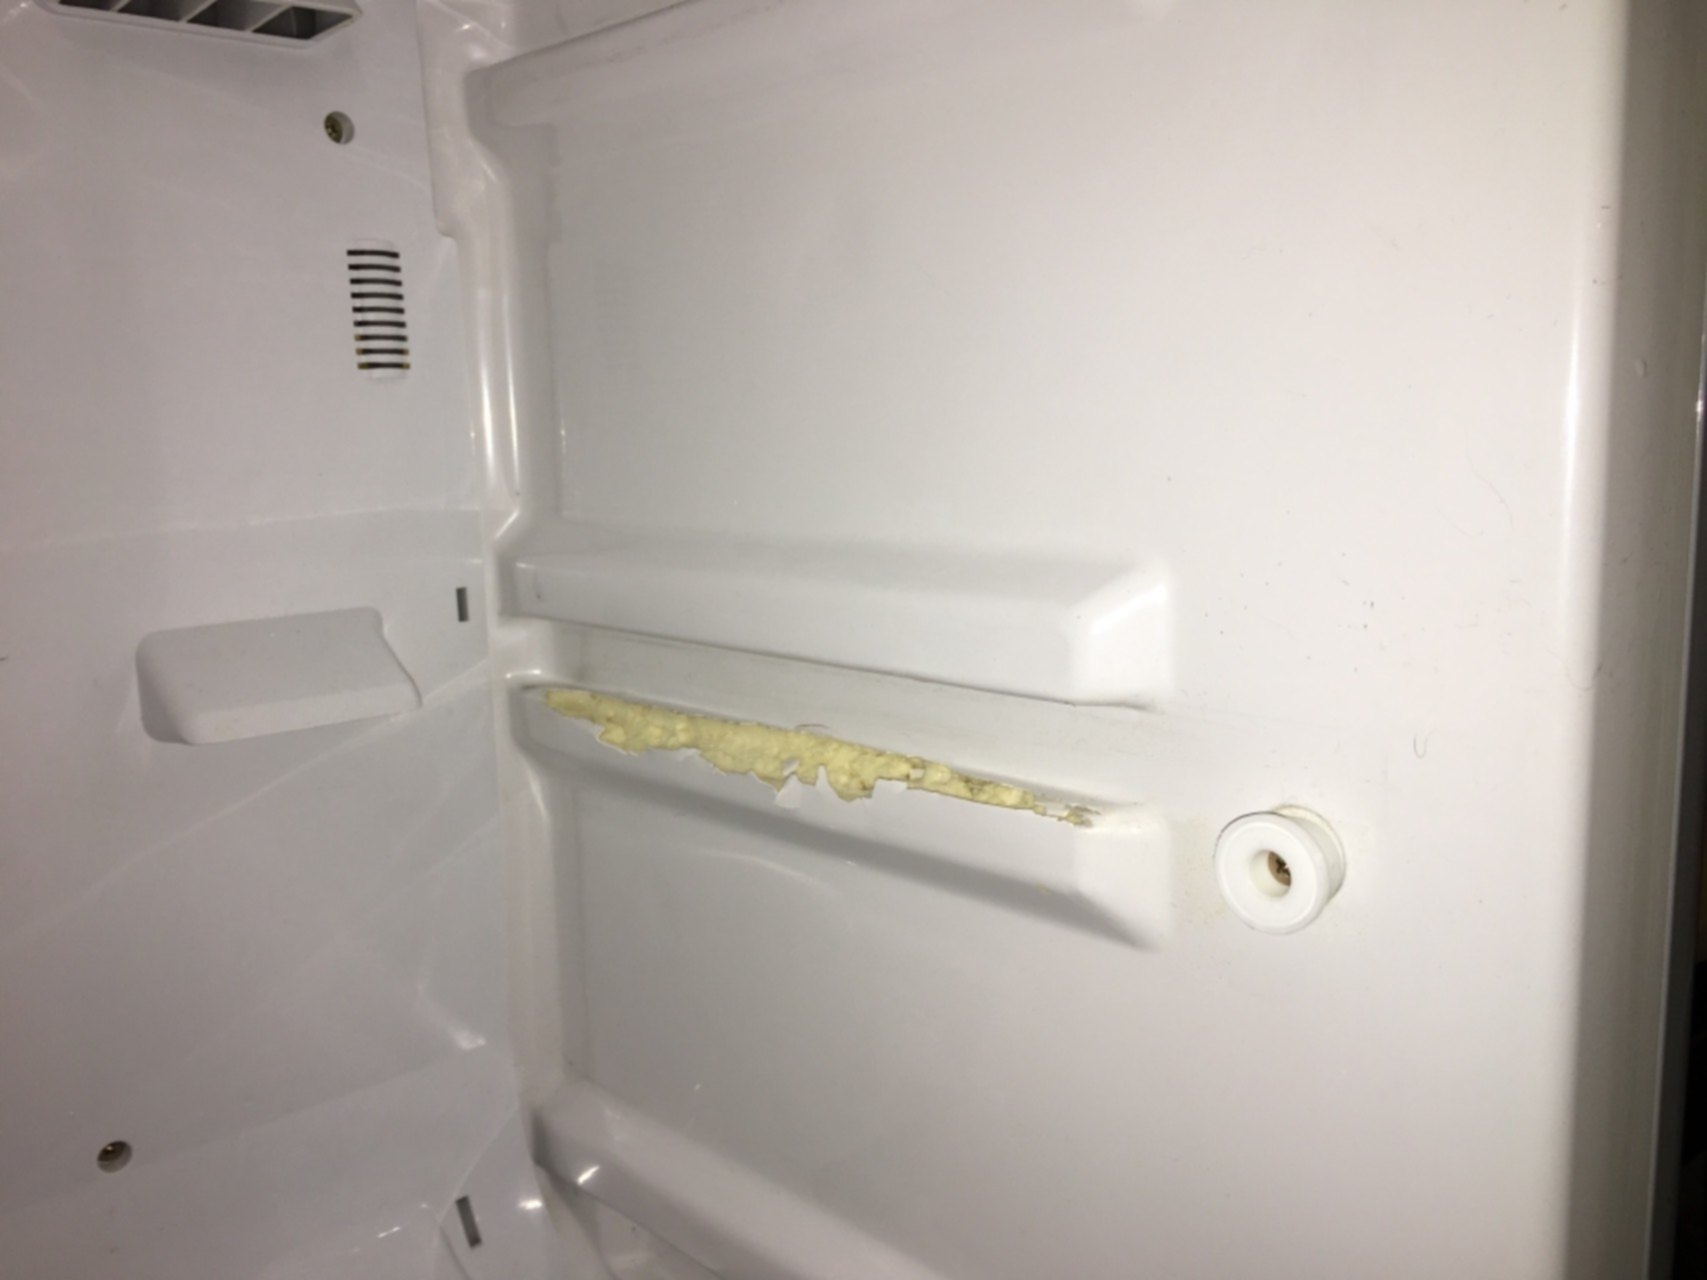 Нижняя полка для холодильника самсунг